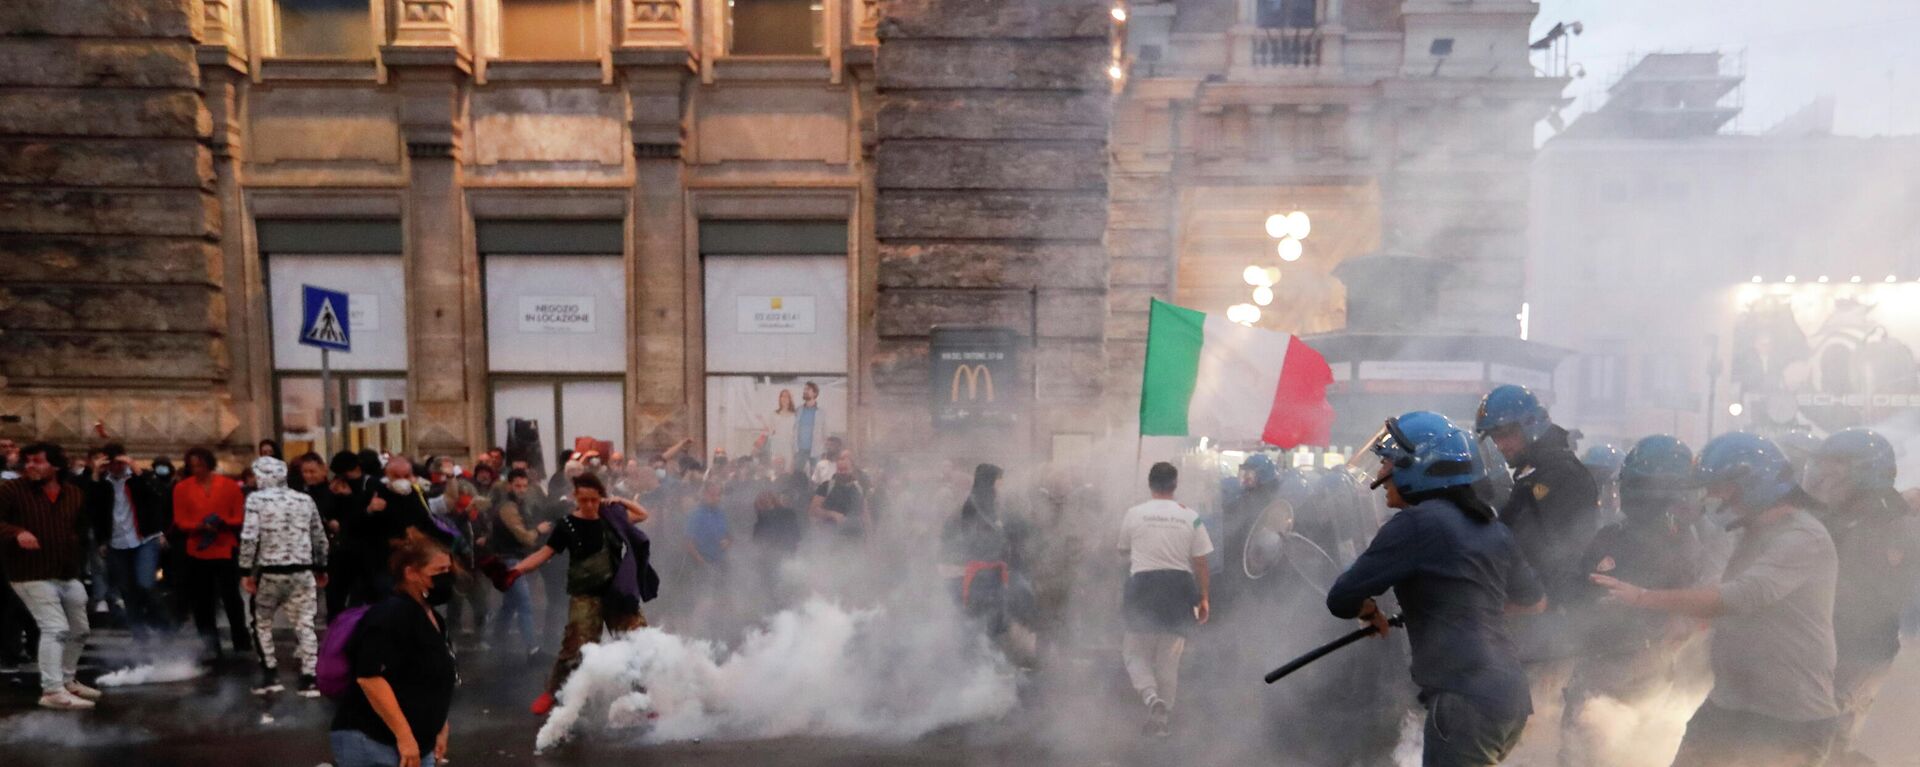 Protestas en Italia contra el pase sanitario - Sputnik Mundo, 1920, 11.10.2021